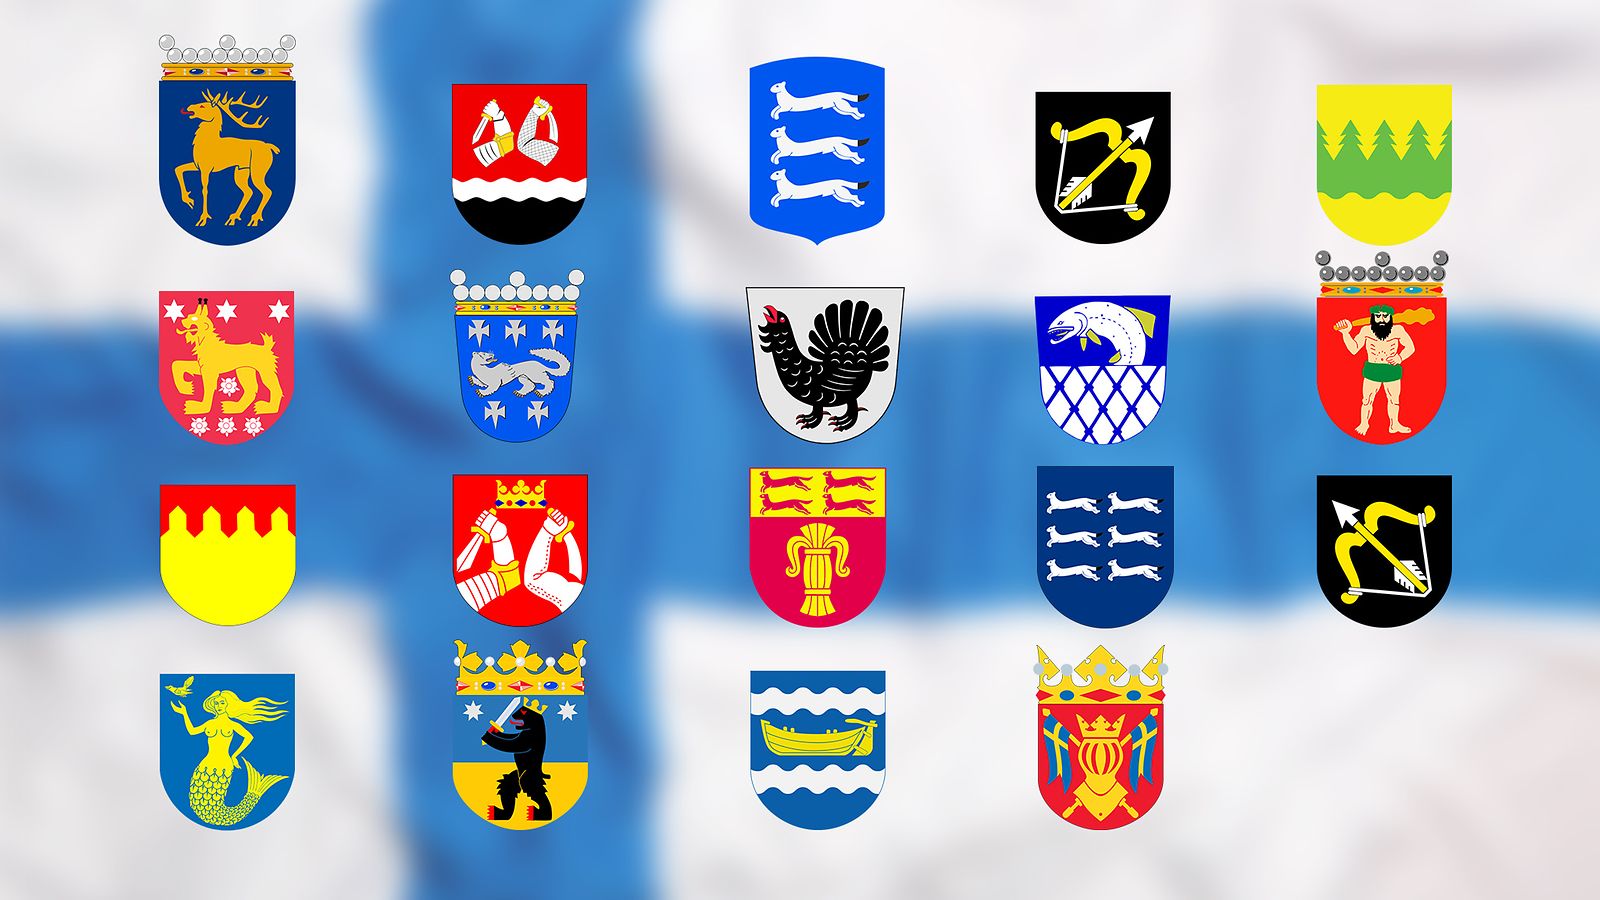 Miltä näyttäisi, jos Suomen vaakunat yhdistettäisiin? Katso tarkkaan:  Tunnistatko oman maakuntasi tästä sekasotkusta? 